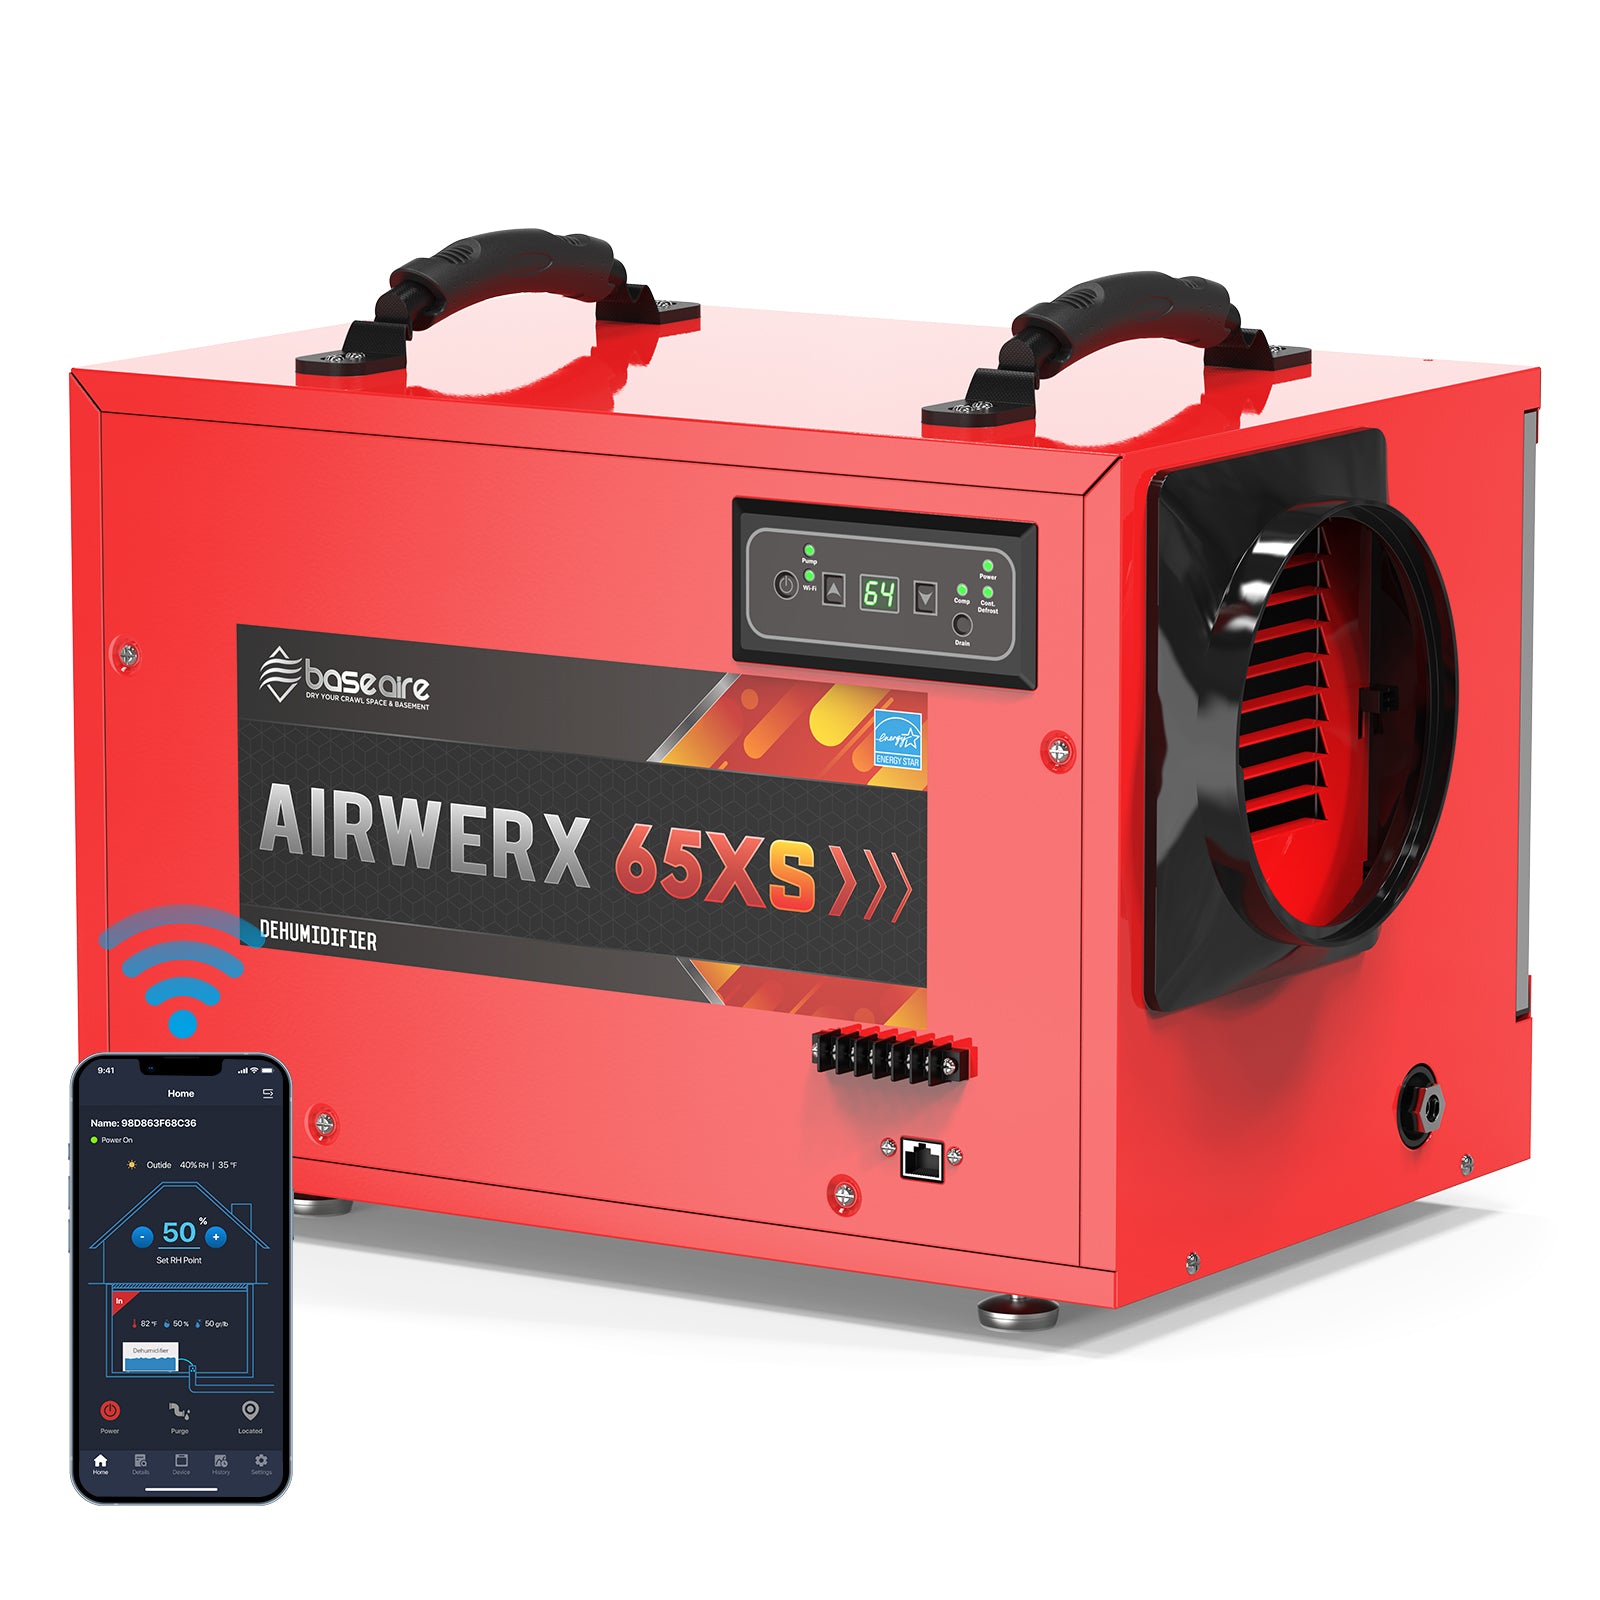 BaseAire® AirWerx 65XS Dehumidifier Wifi Control